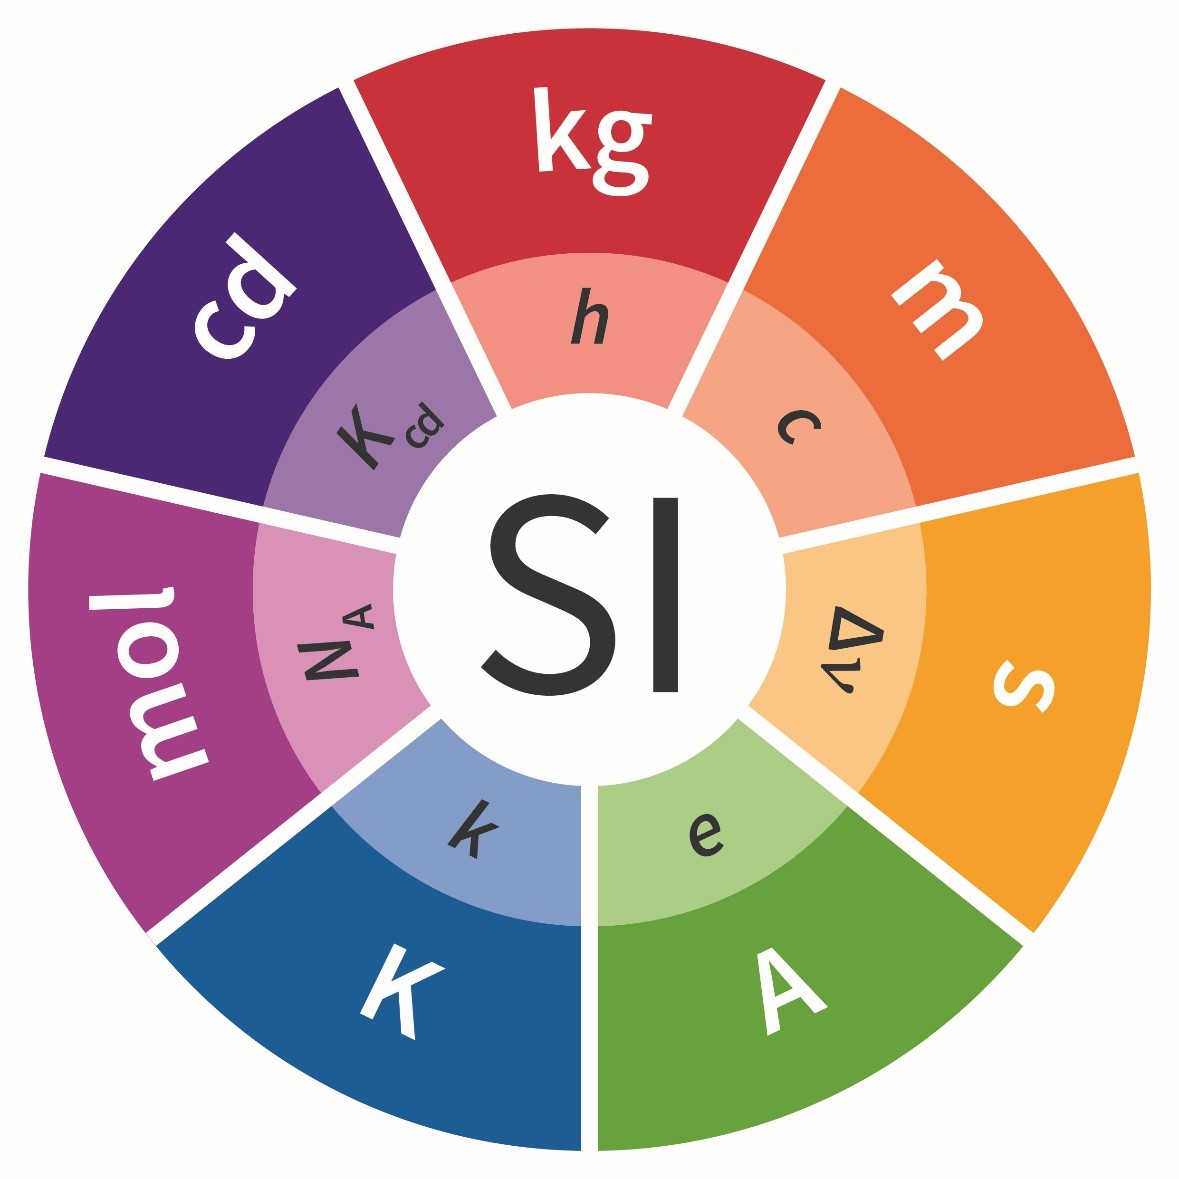 Nowe logo Układu SI - w kolorowym kółku siedem jednostek miar - każda w innym kolorze.